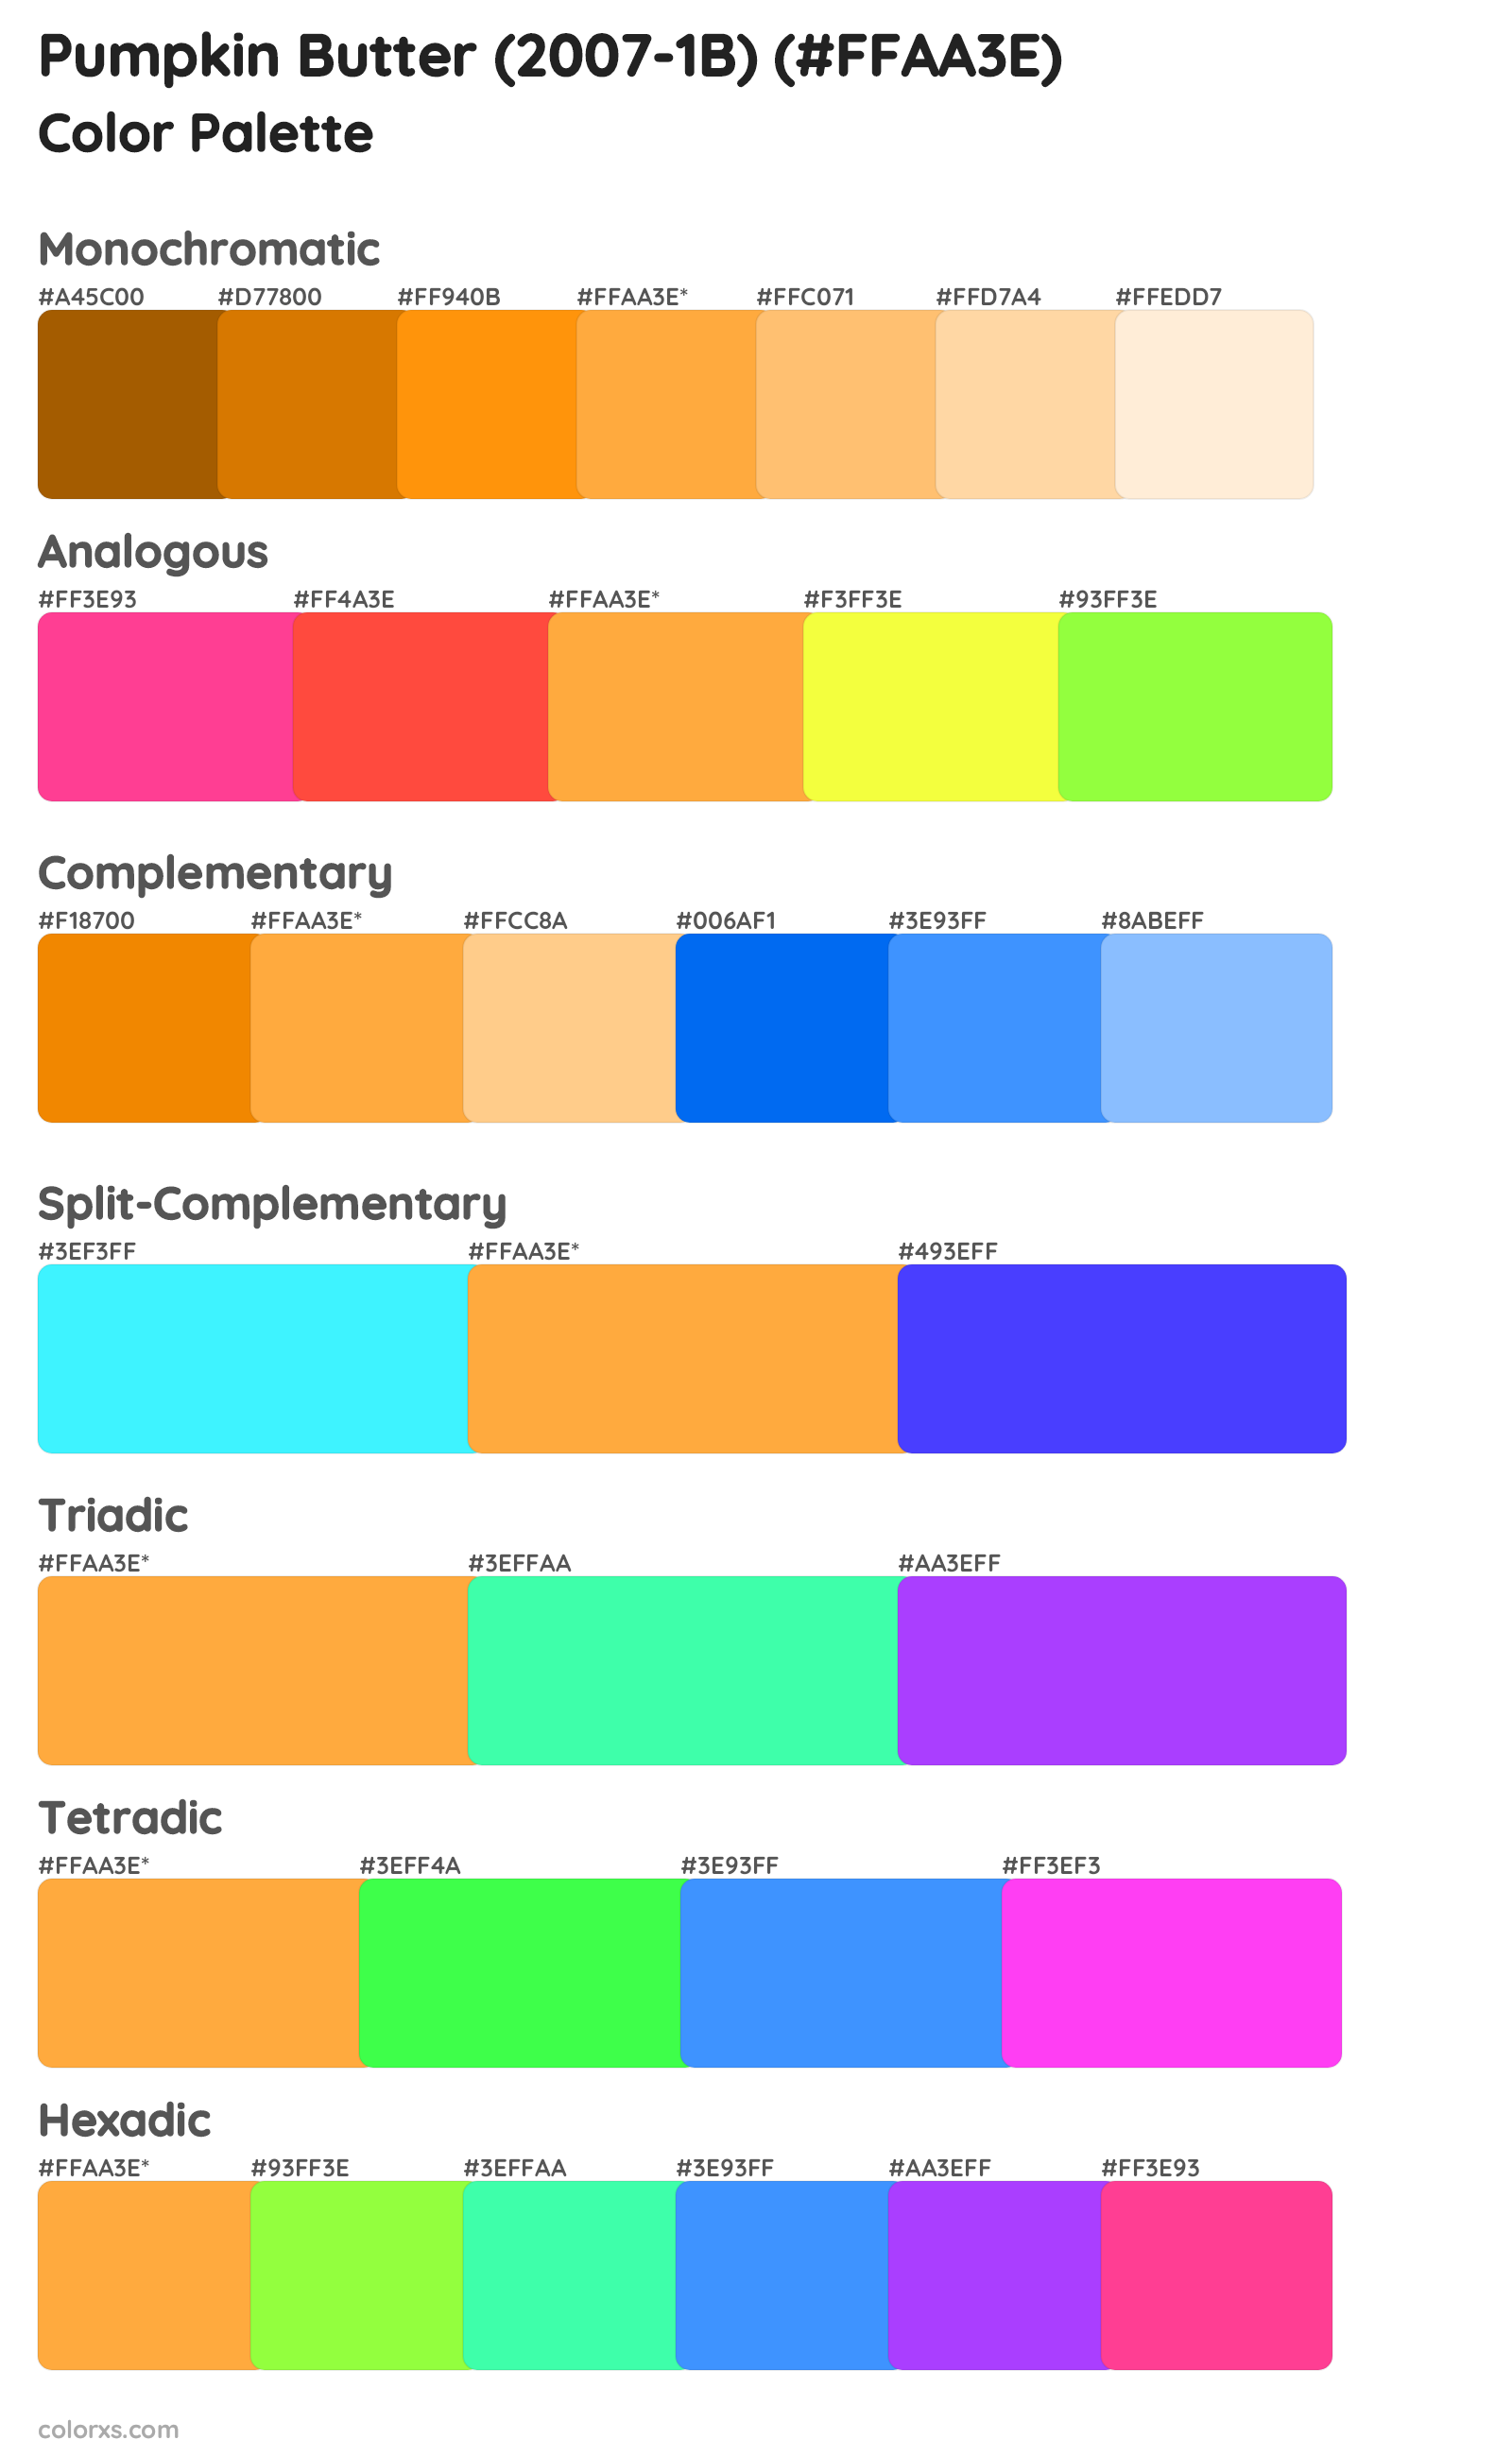 Pumpkin Butter (2007-1B) Color Scheme Palettes